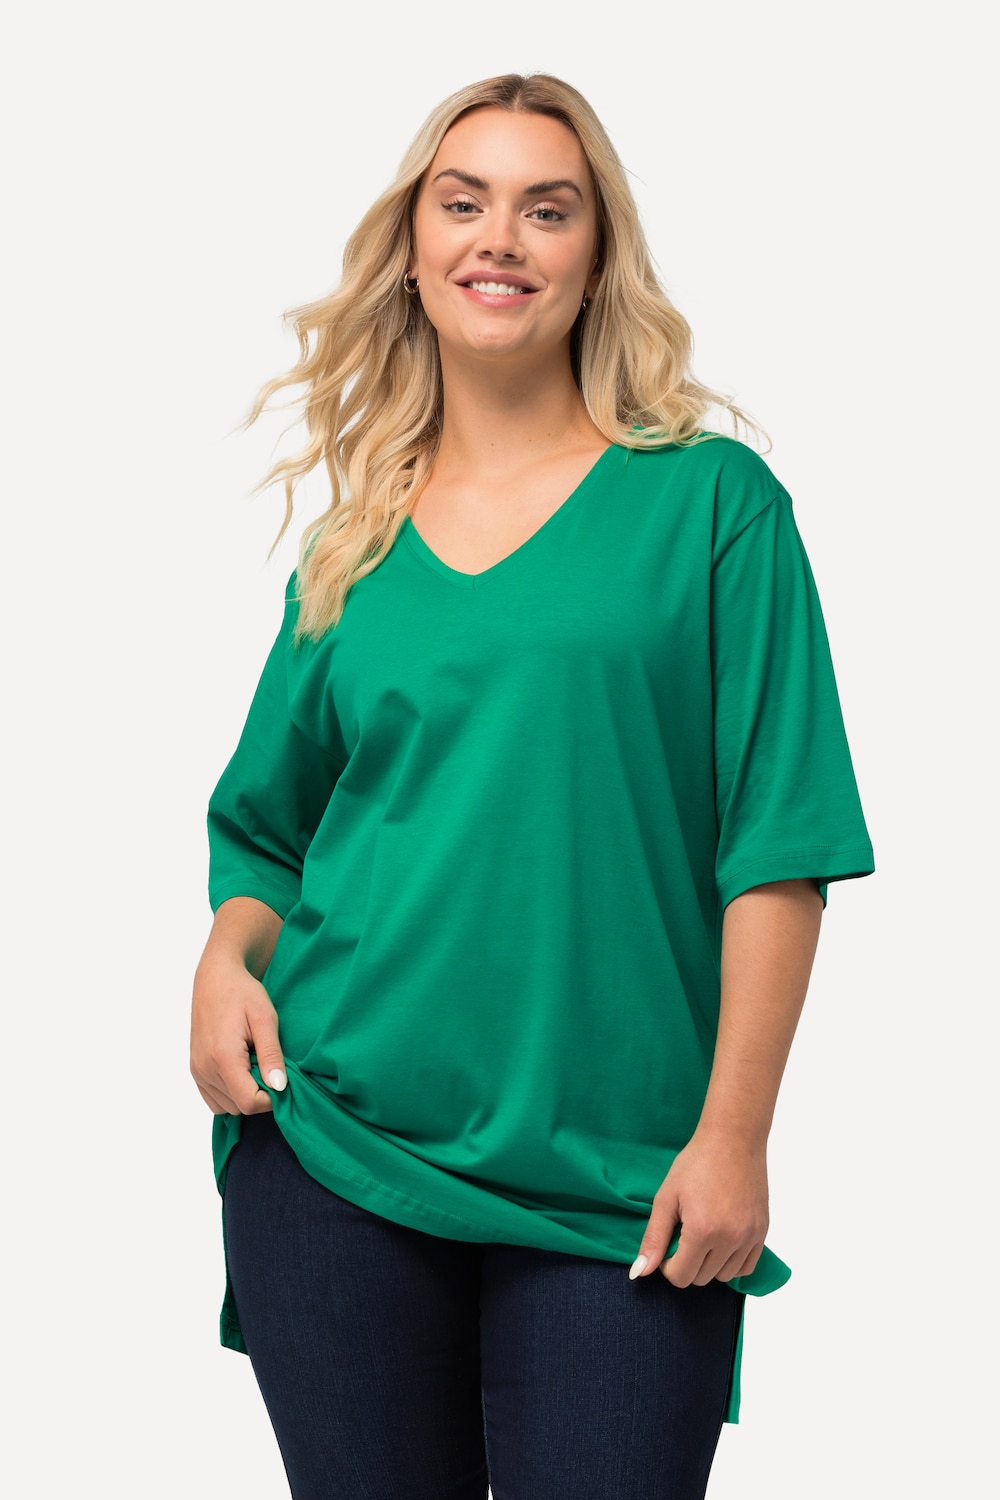 Grote Maten T-Shirt, Dames, groen, Maat: 58/60, Katoen/Viscose, Ulla Popken